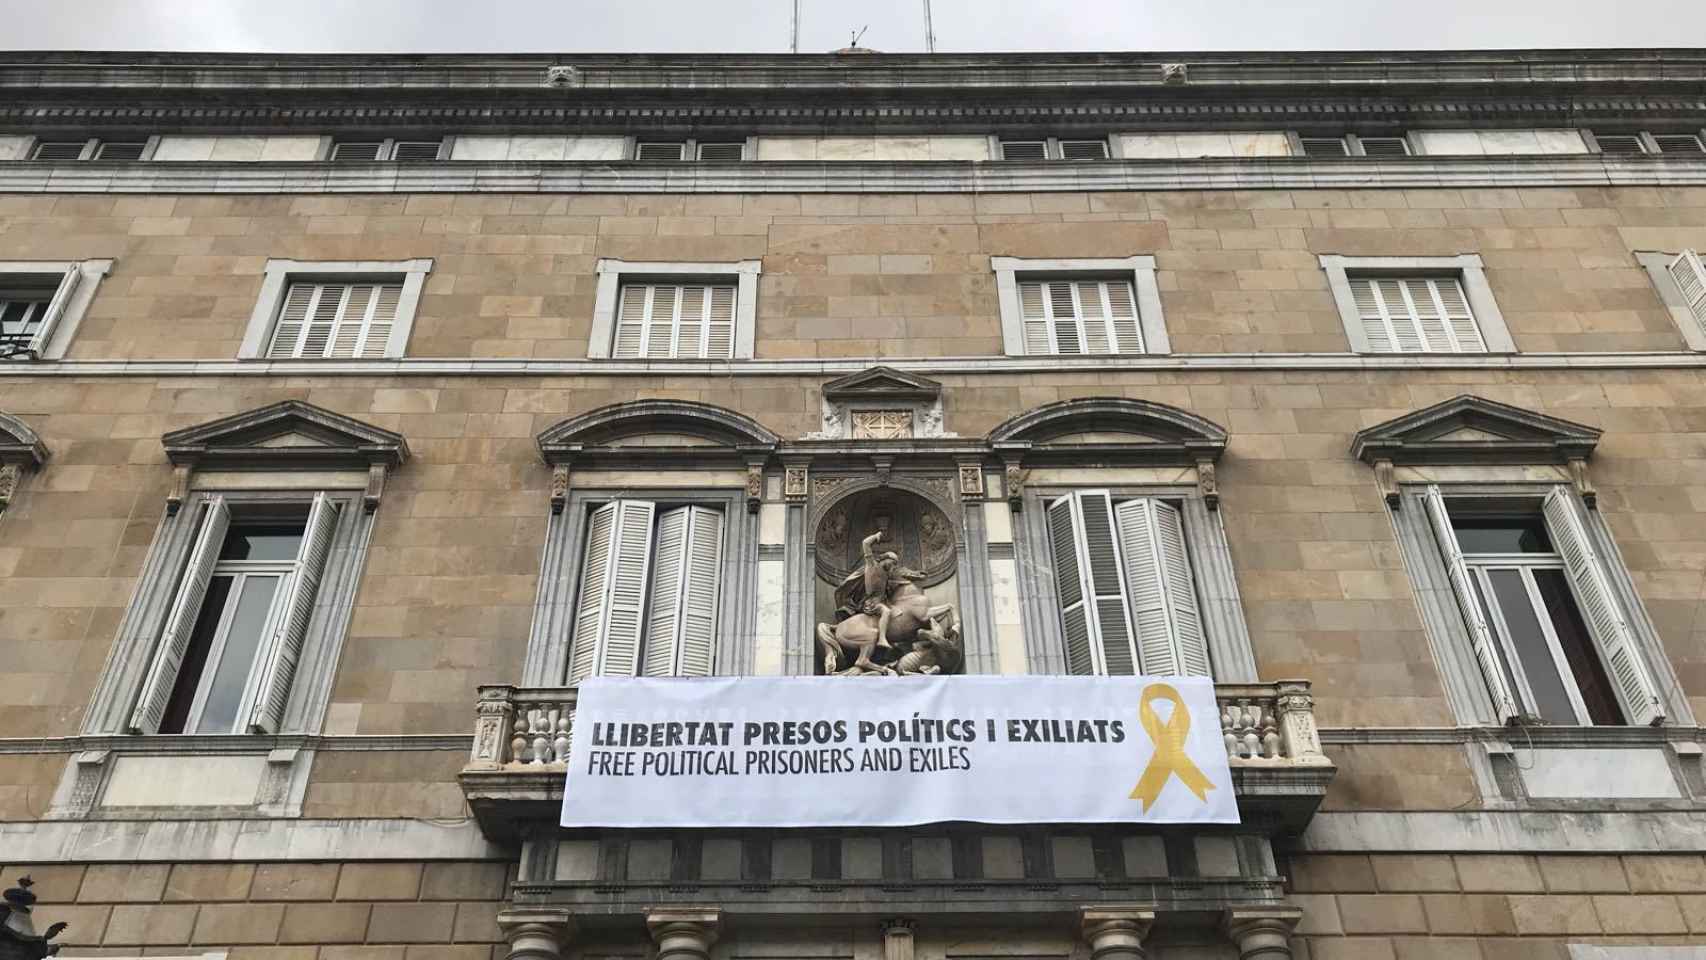 La fachada de la Generalidad, con la pancarta en la que se pide libertad para los presos políticos y los exiliados.